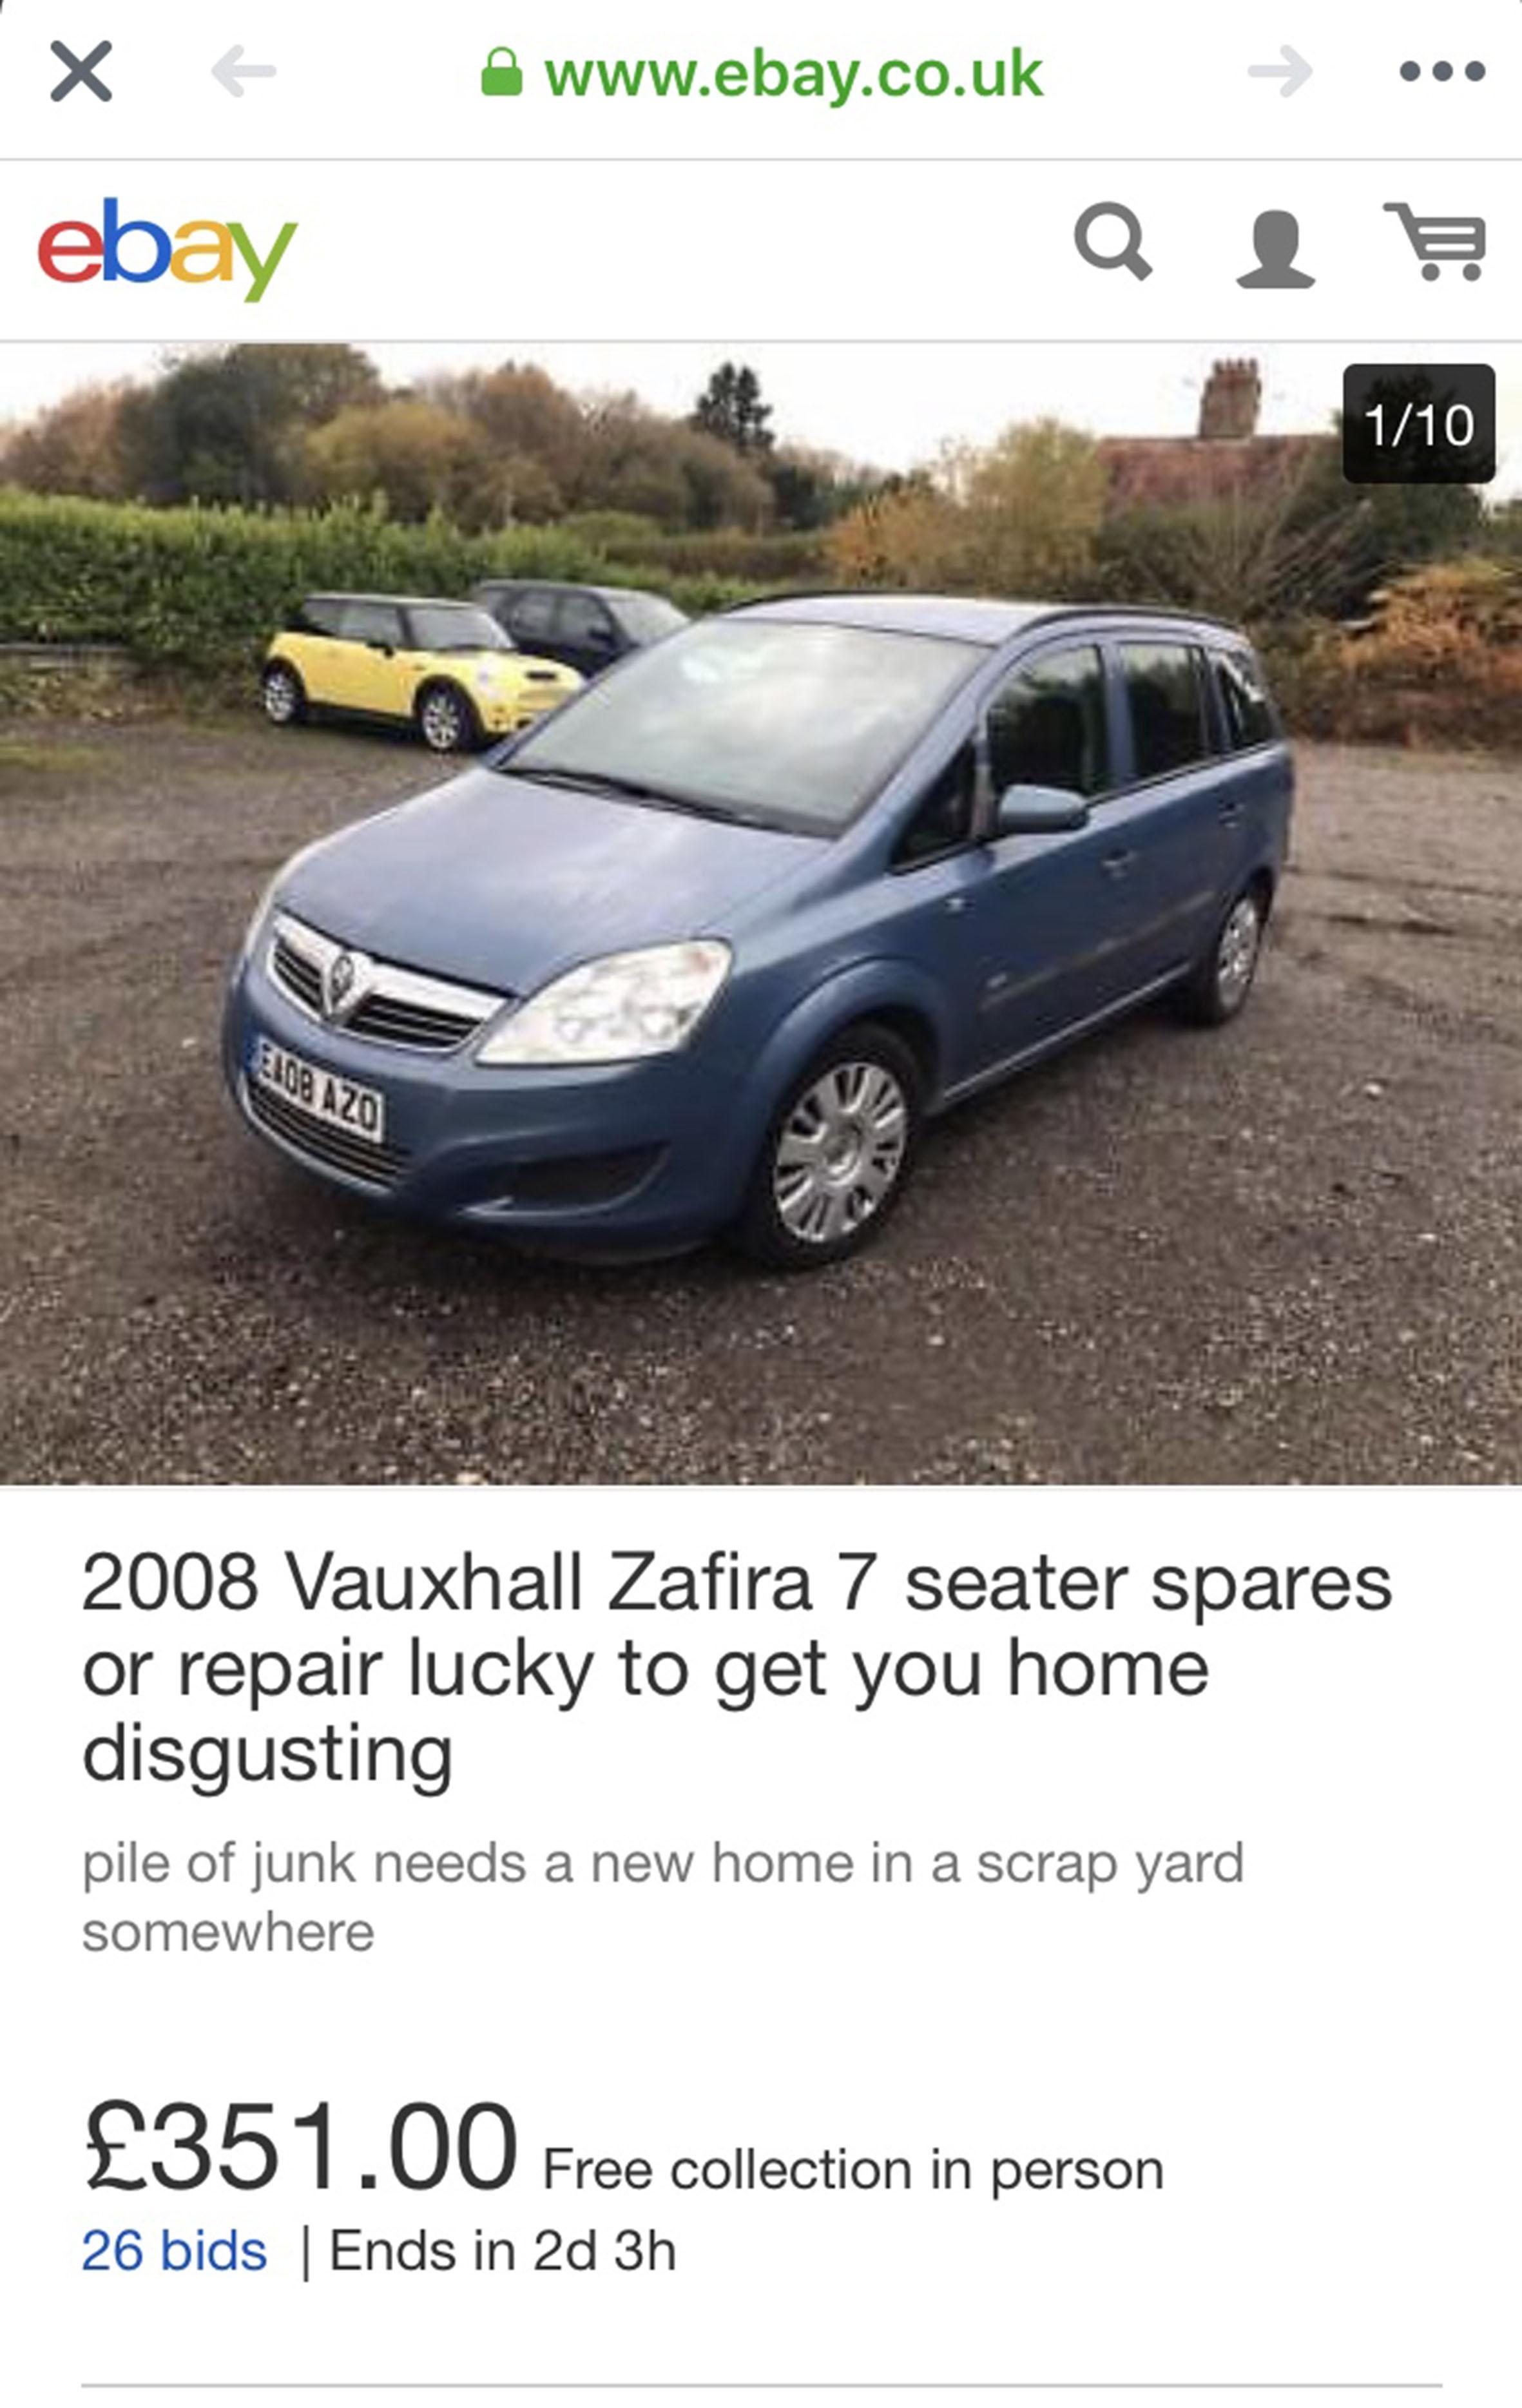 Марк Лилли Гараж в Восточном Суссексе взял Vauxhall Zafira 2008 года за 300 фунтов, но понял, что у него есть ряд проблем, включая сломанную фару, утечки масла и грязные сиденья